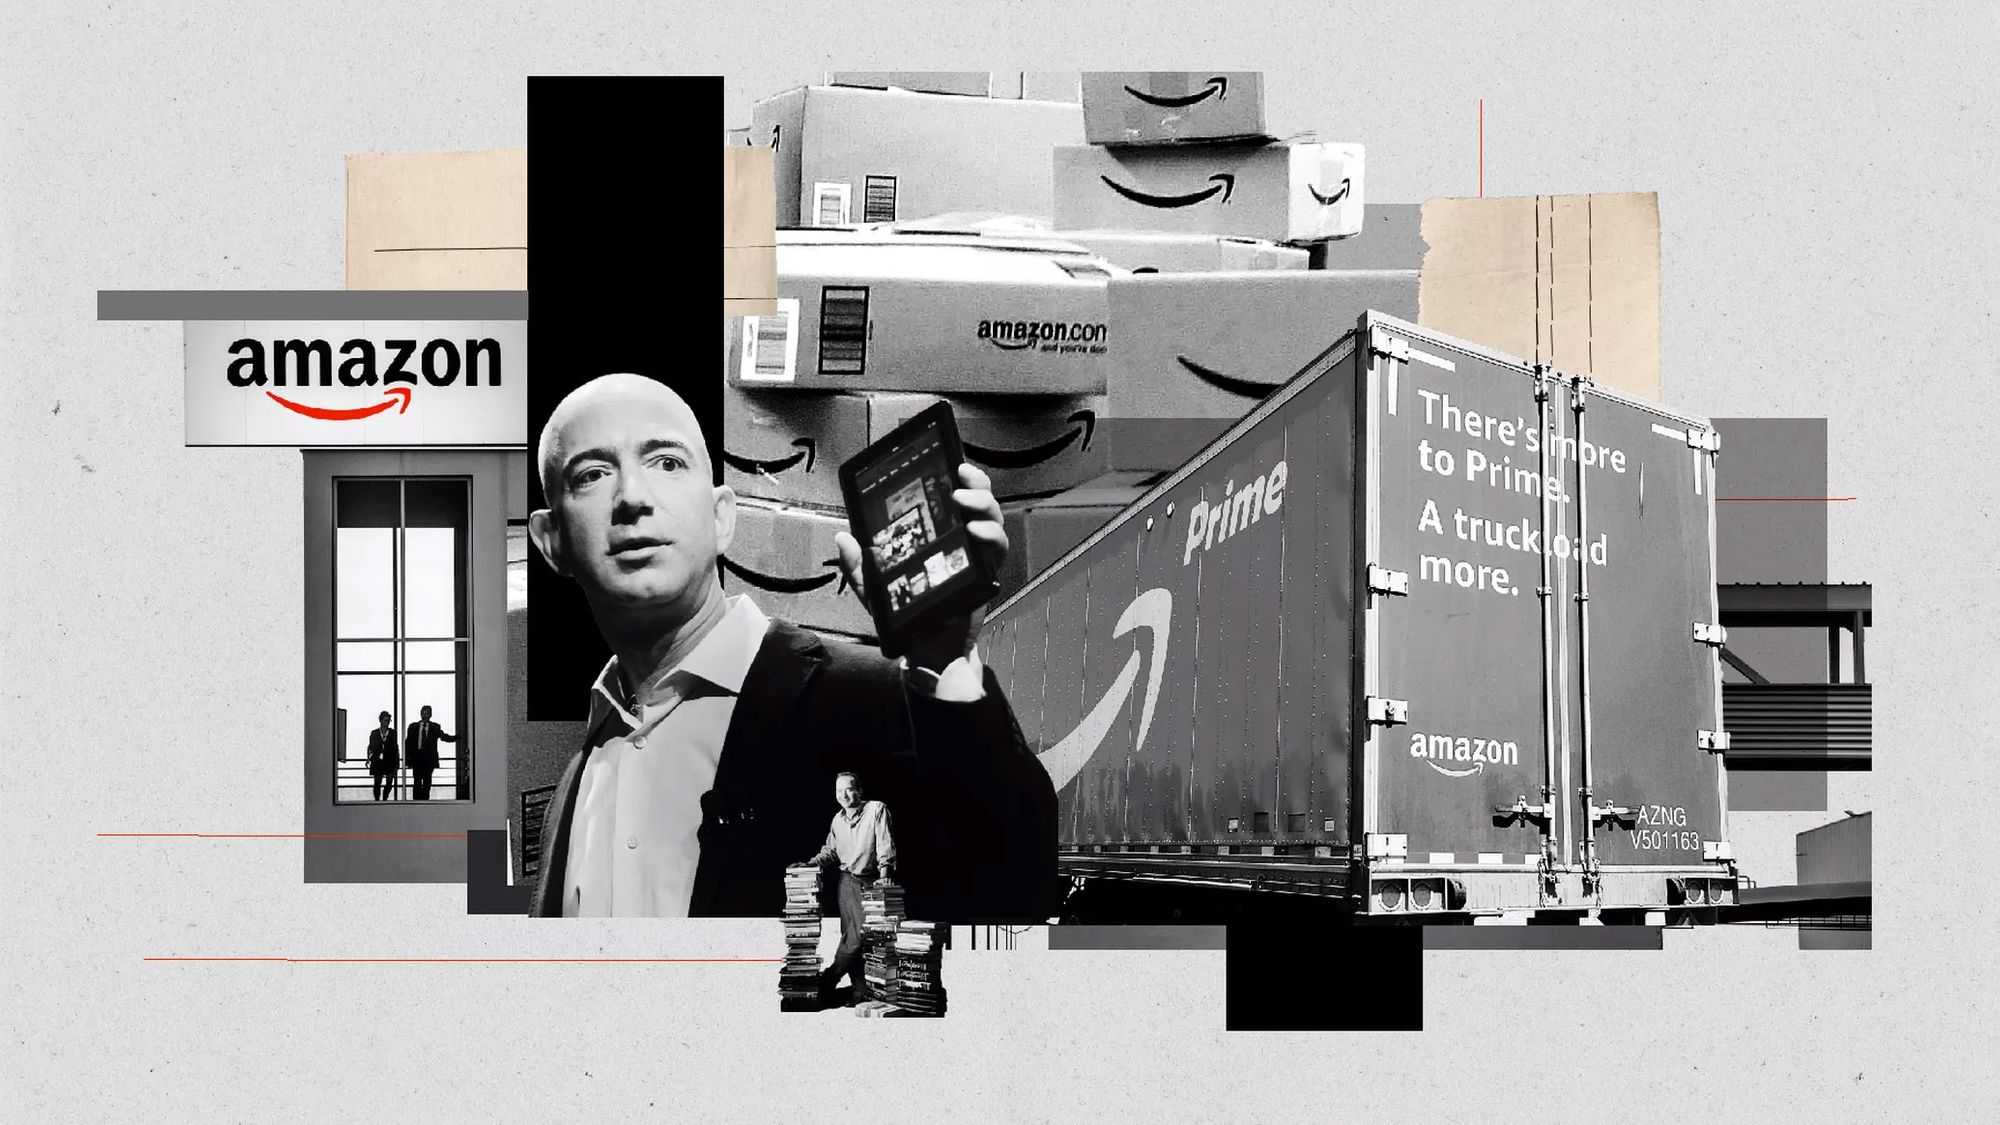 Amazon podría enfrentar pronto una investigación anti-monopolio. Aquí hay 3 preguntas que el gobierno podría hacerle